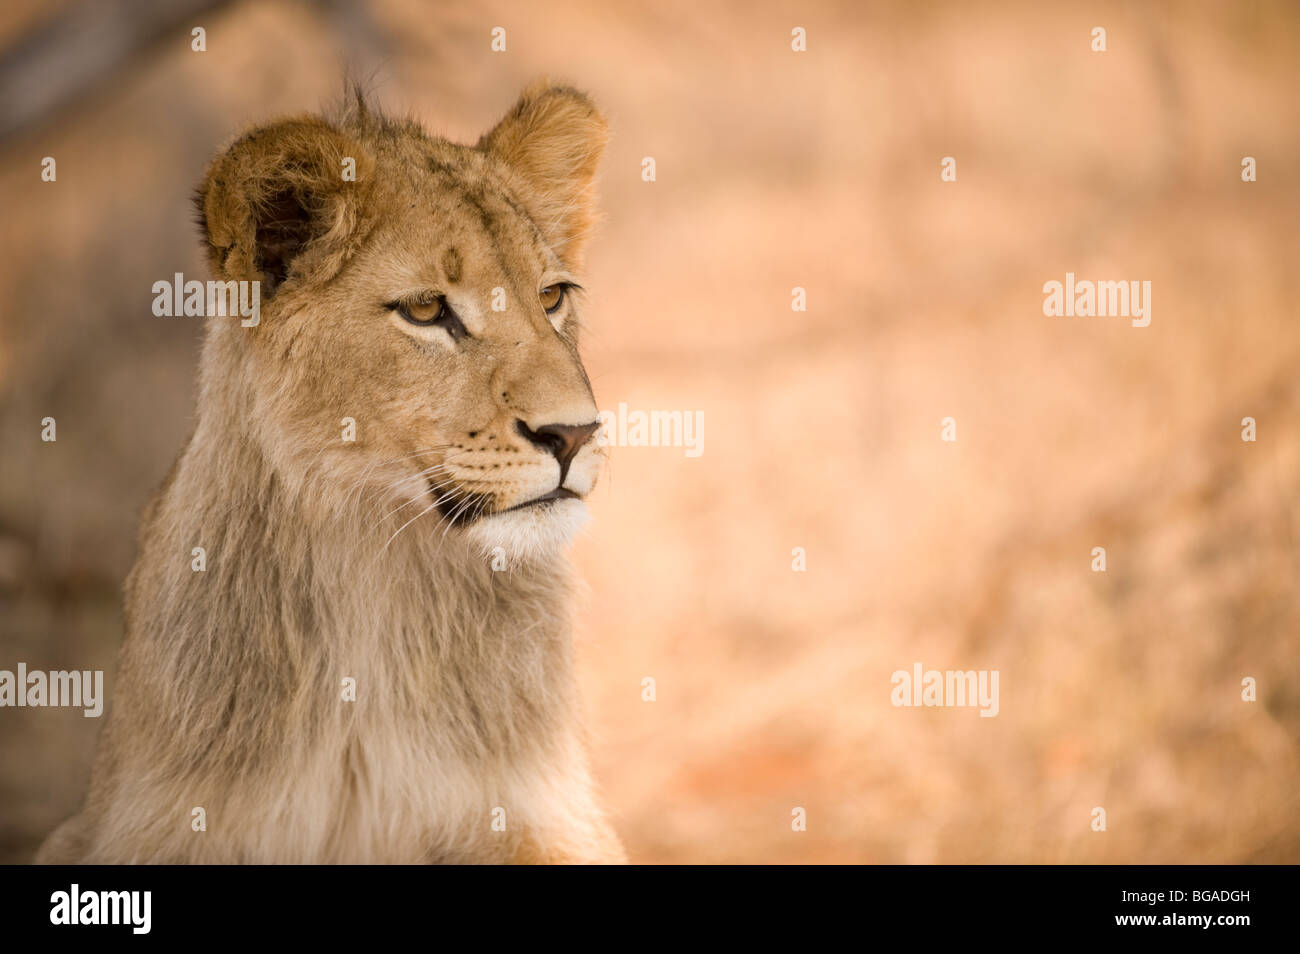 Lion Cub Portrait Stock Photo